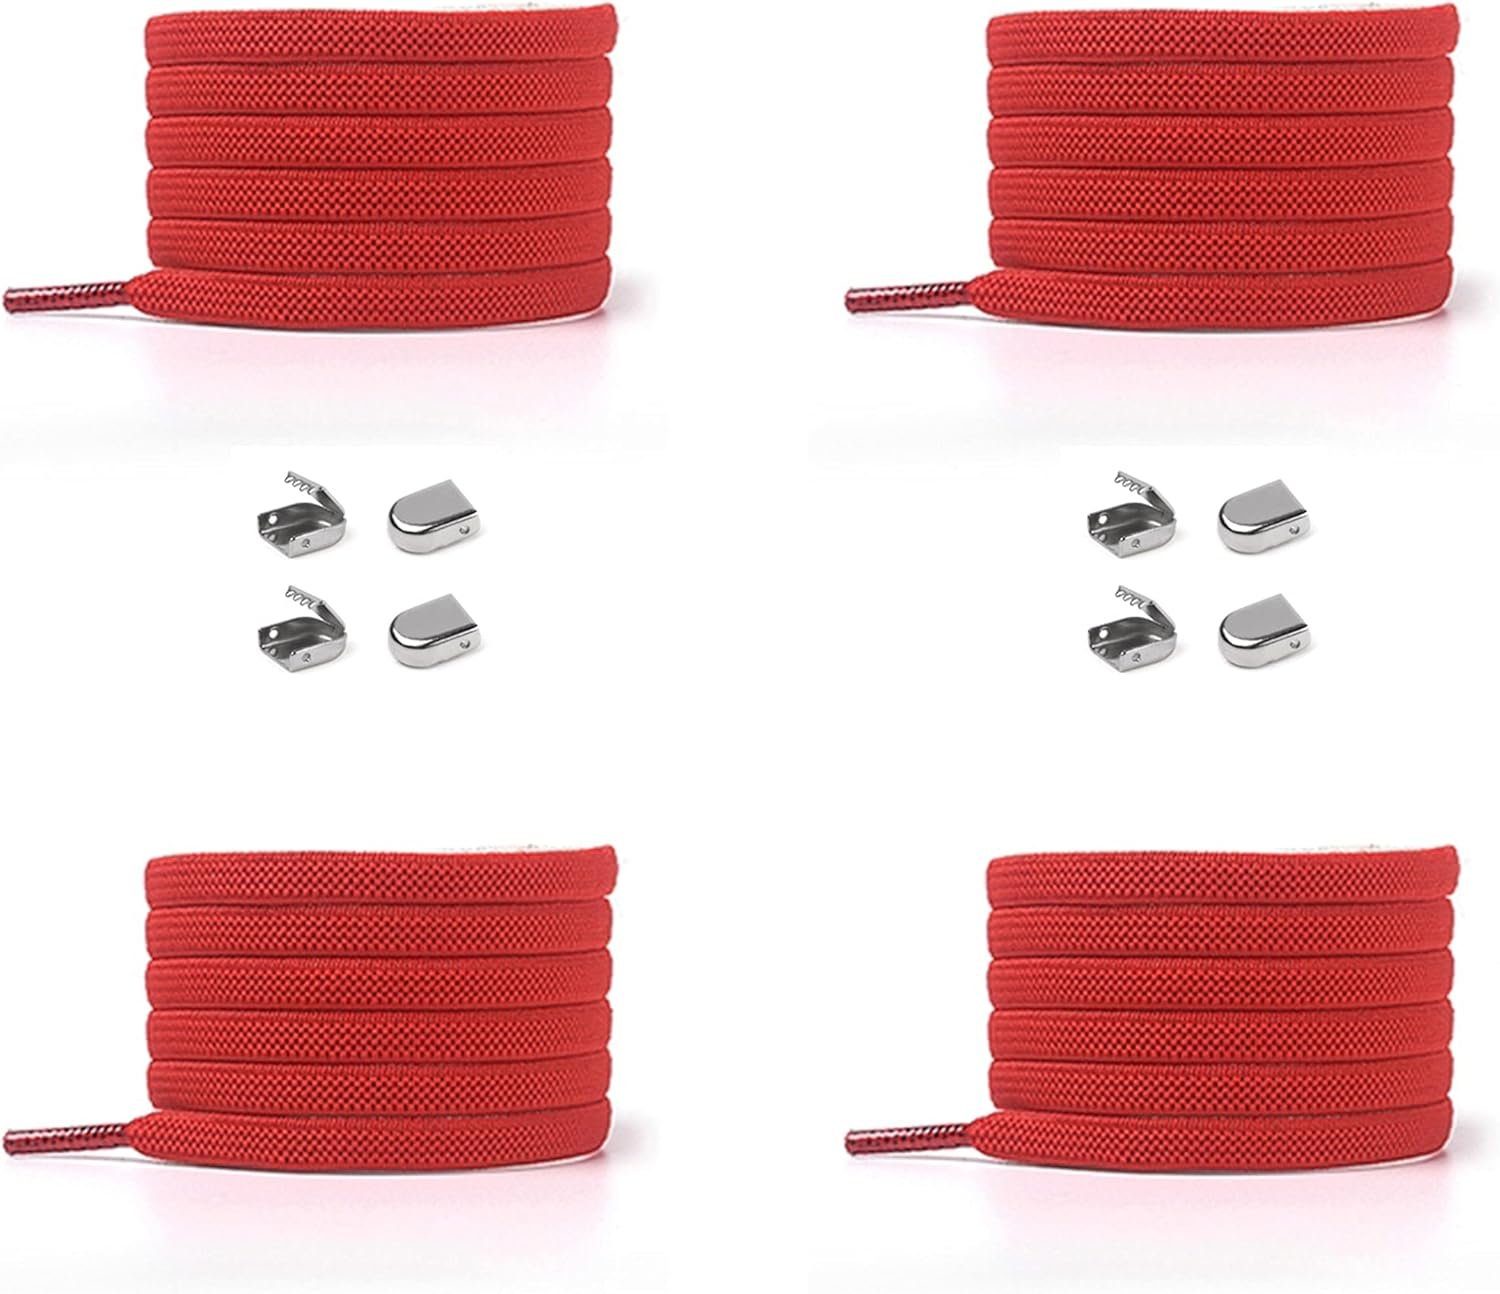 ELANOX Schnürsenkel 4 Stück für Enden silber - inkl. Clips, 8 Paar 2 Schuhe mit rot (Clips) Schnürsenkel St. in elastische